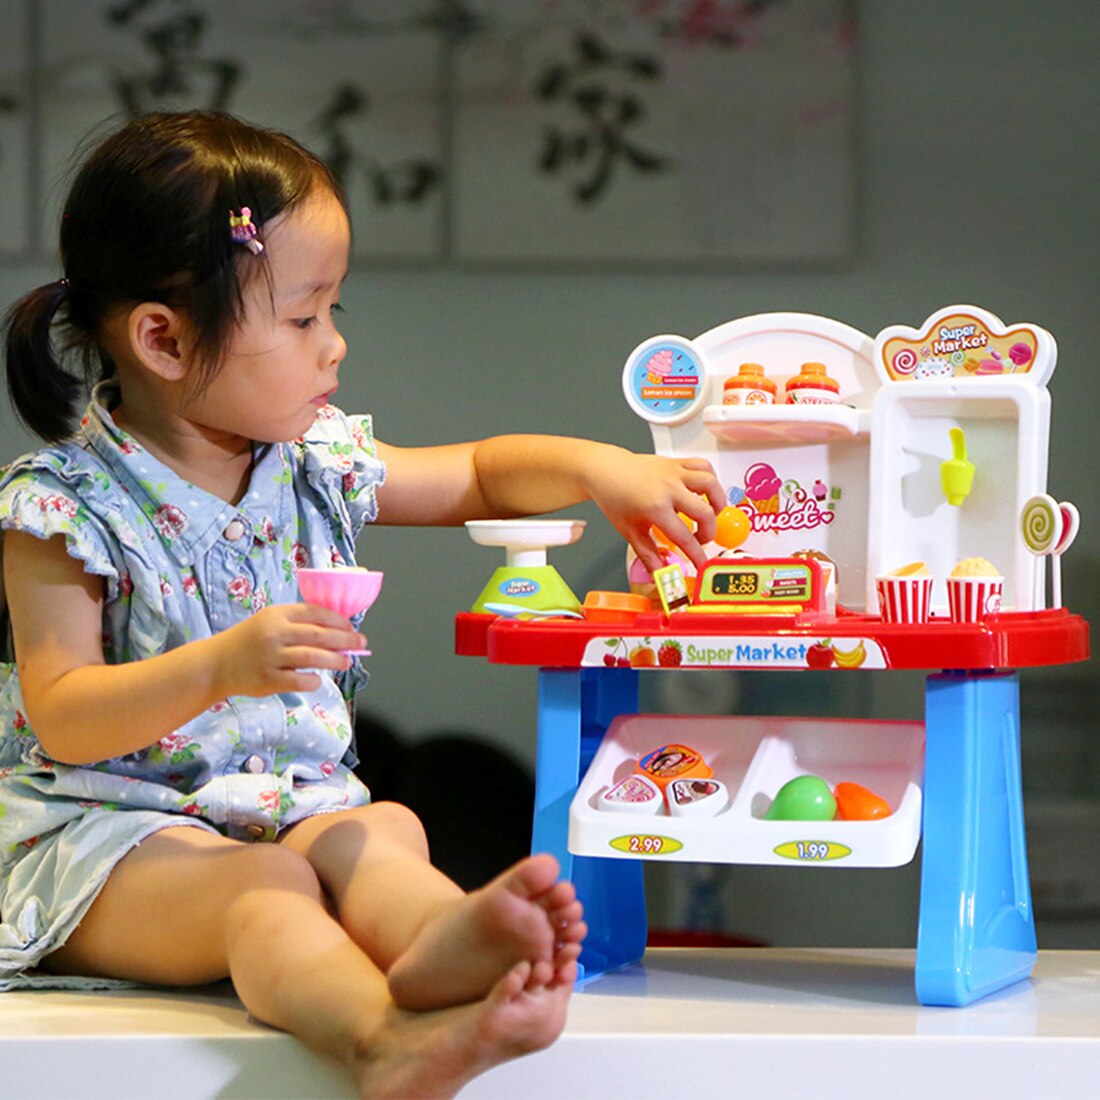 34 stk / sæt børn mini supermarked legesæt foregiver shopping marked legestand dagligvarer legetøj med lys og lyd - blå / lyserød